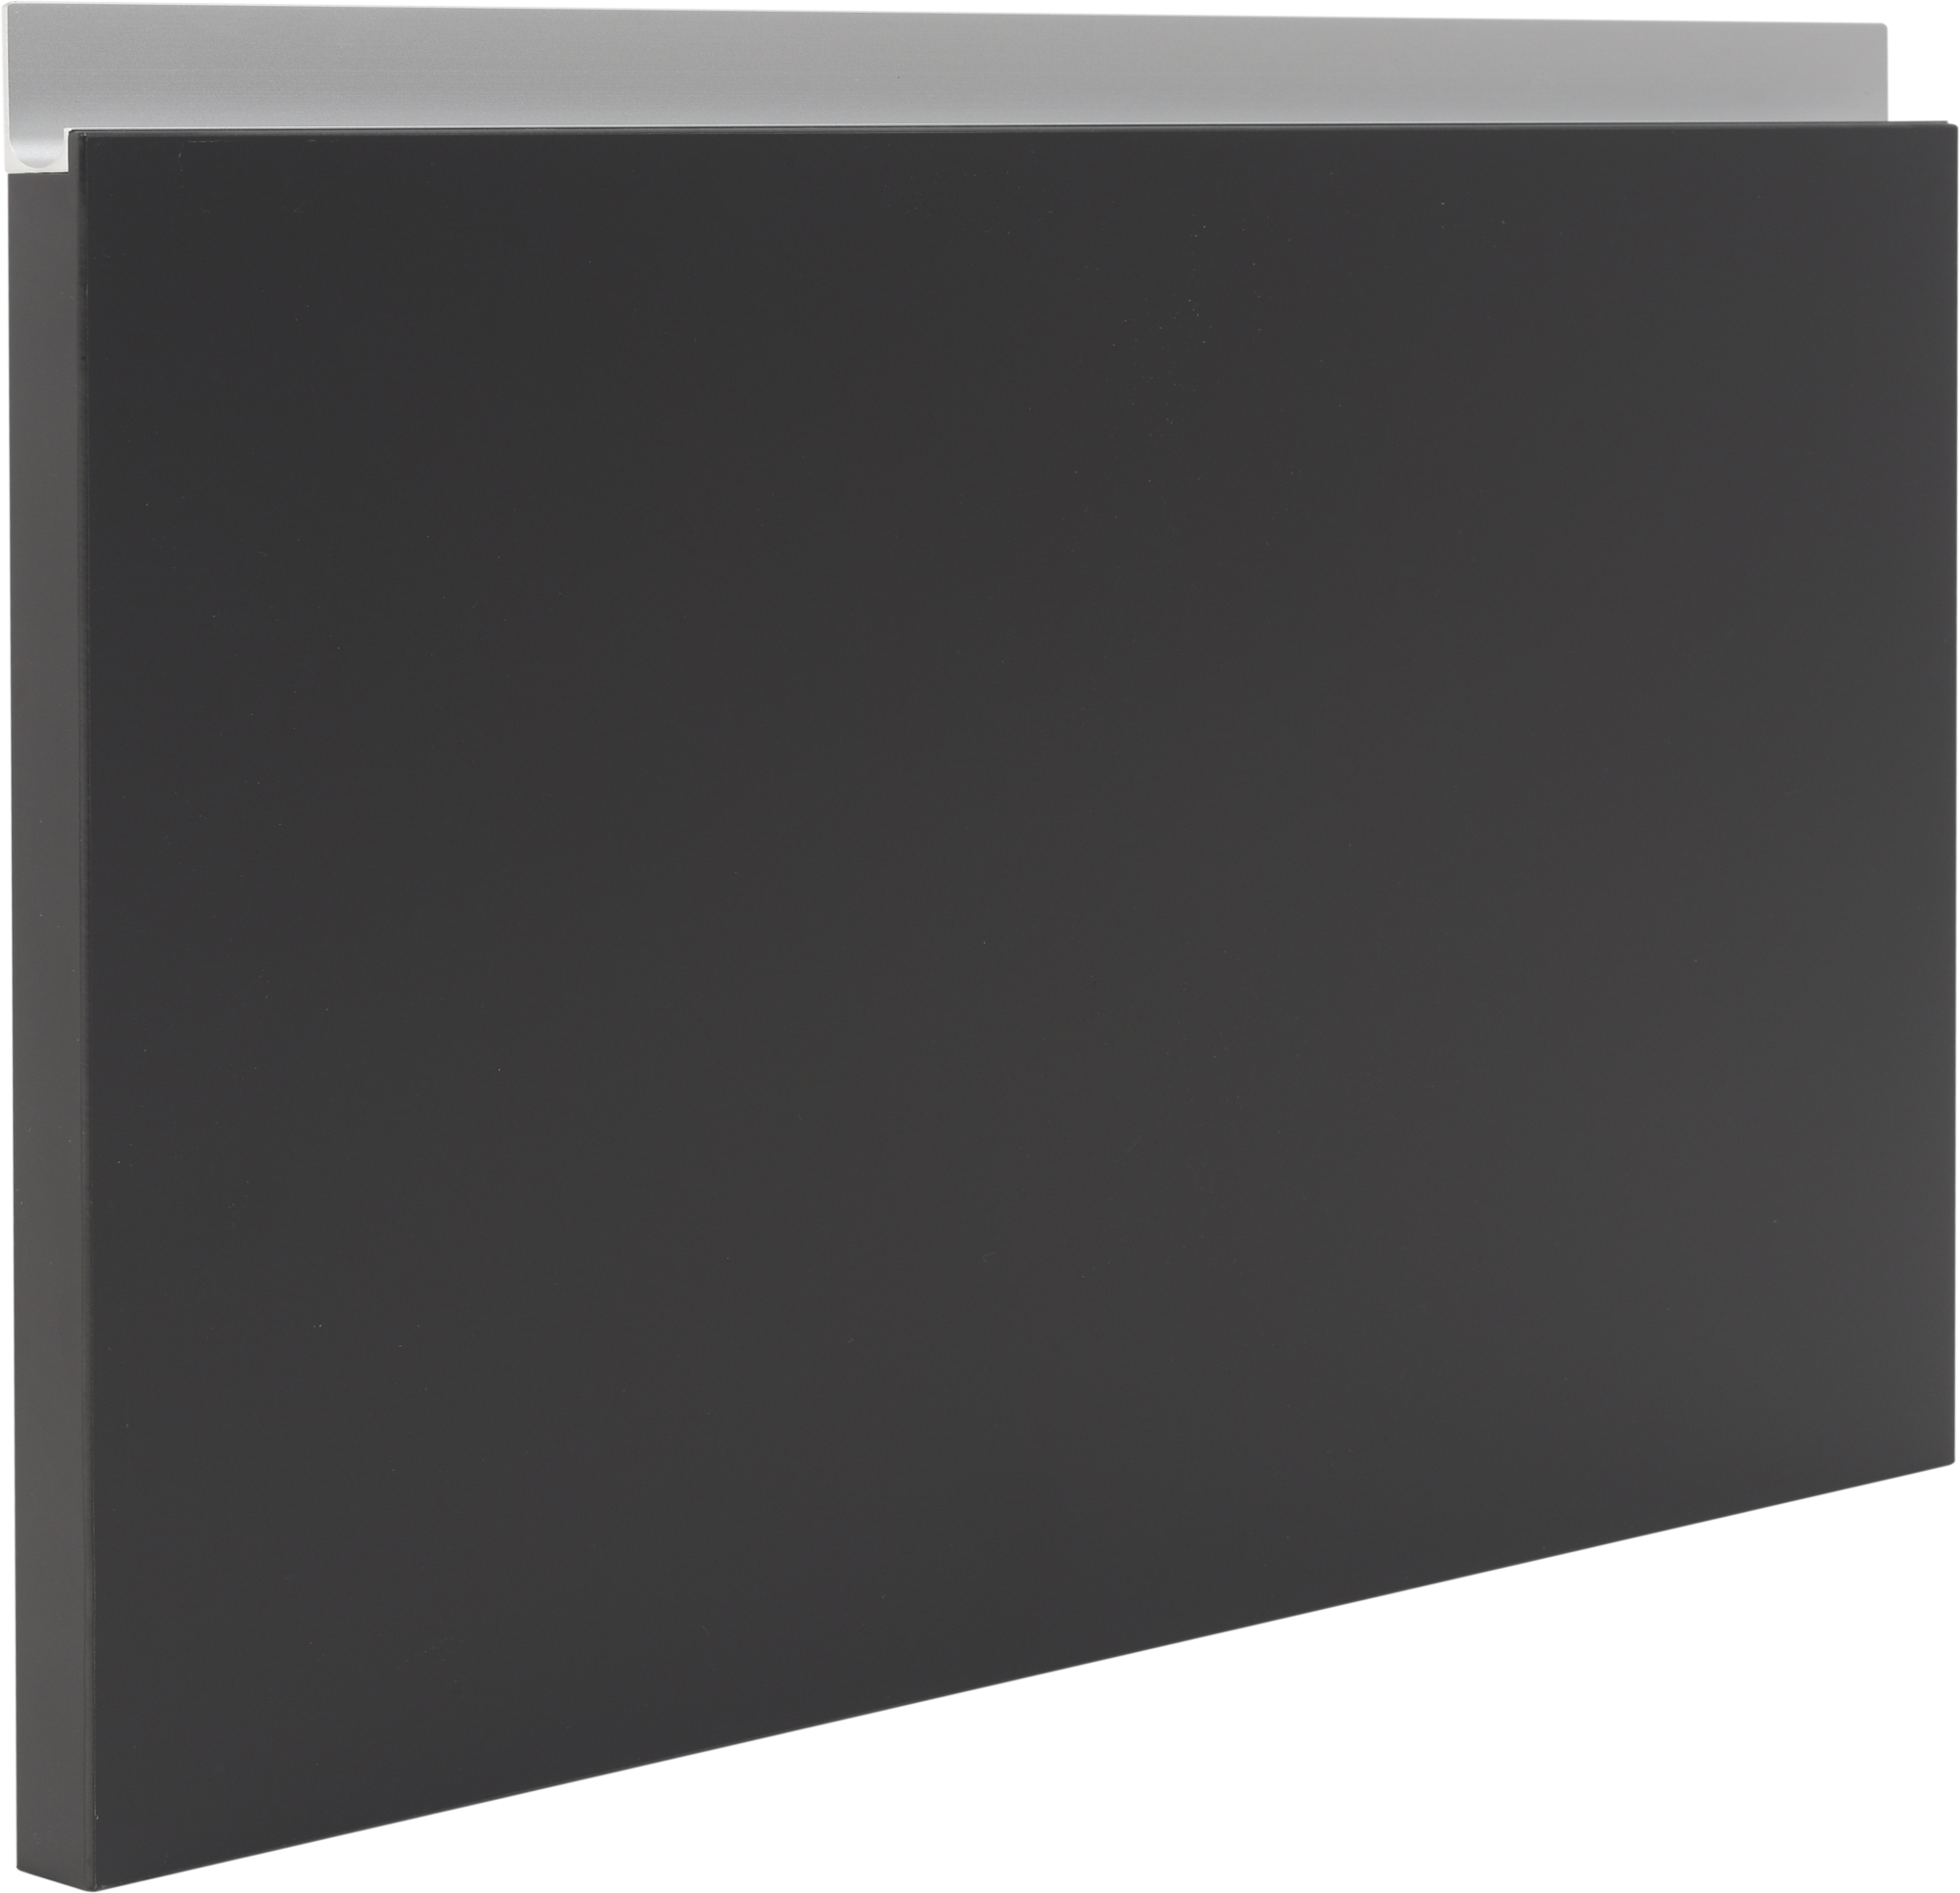 Frente para mueble de cocina mikonos antracita brillo 38,4x60 cm